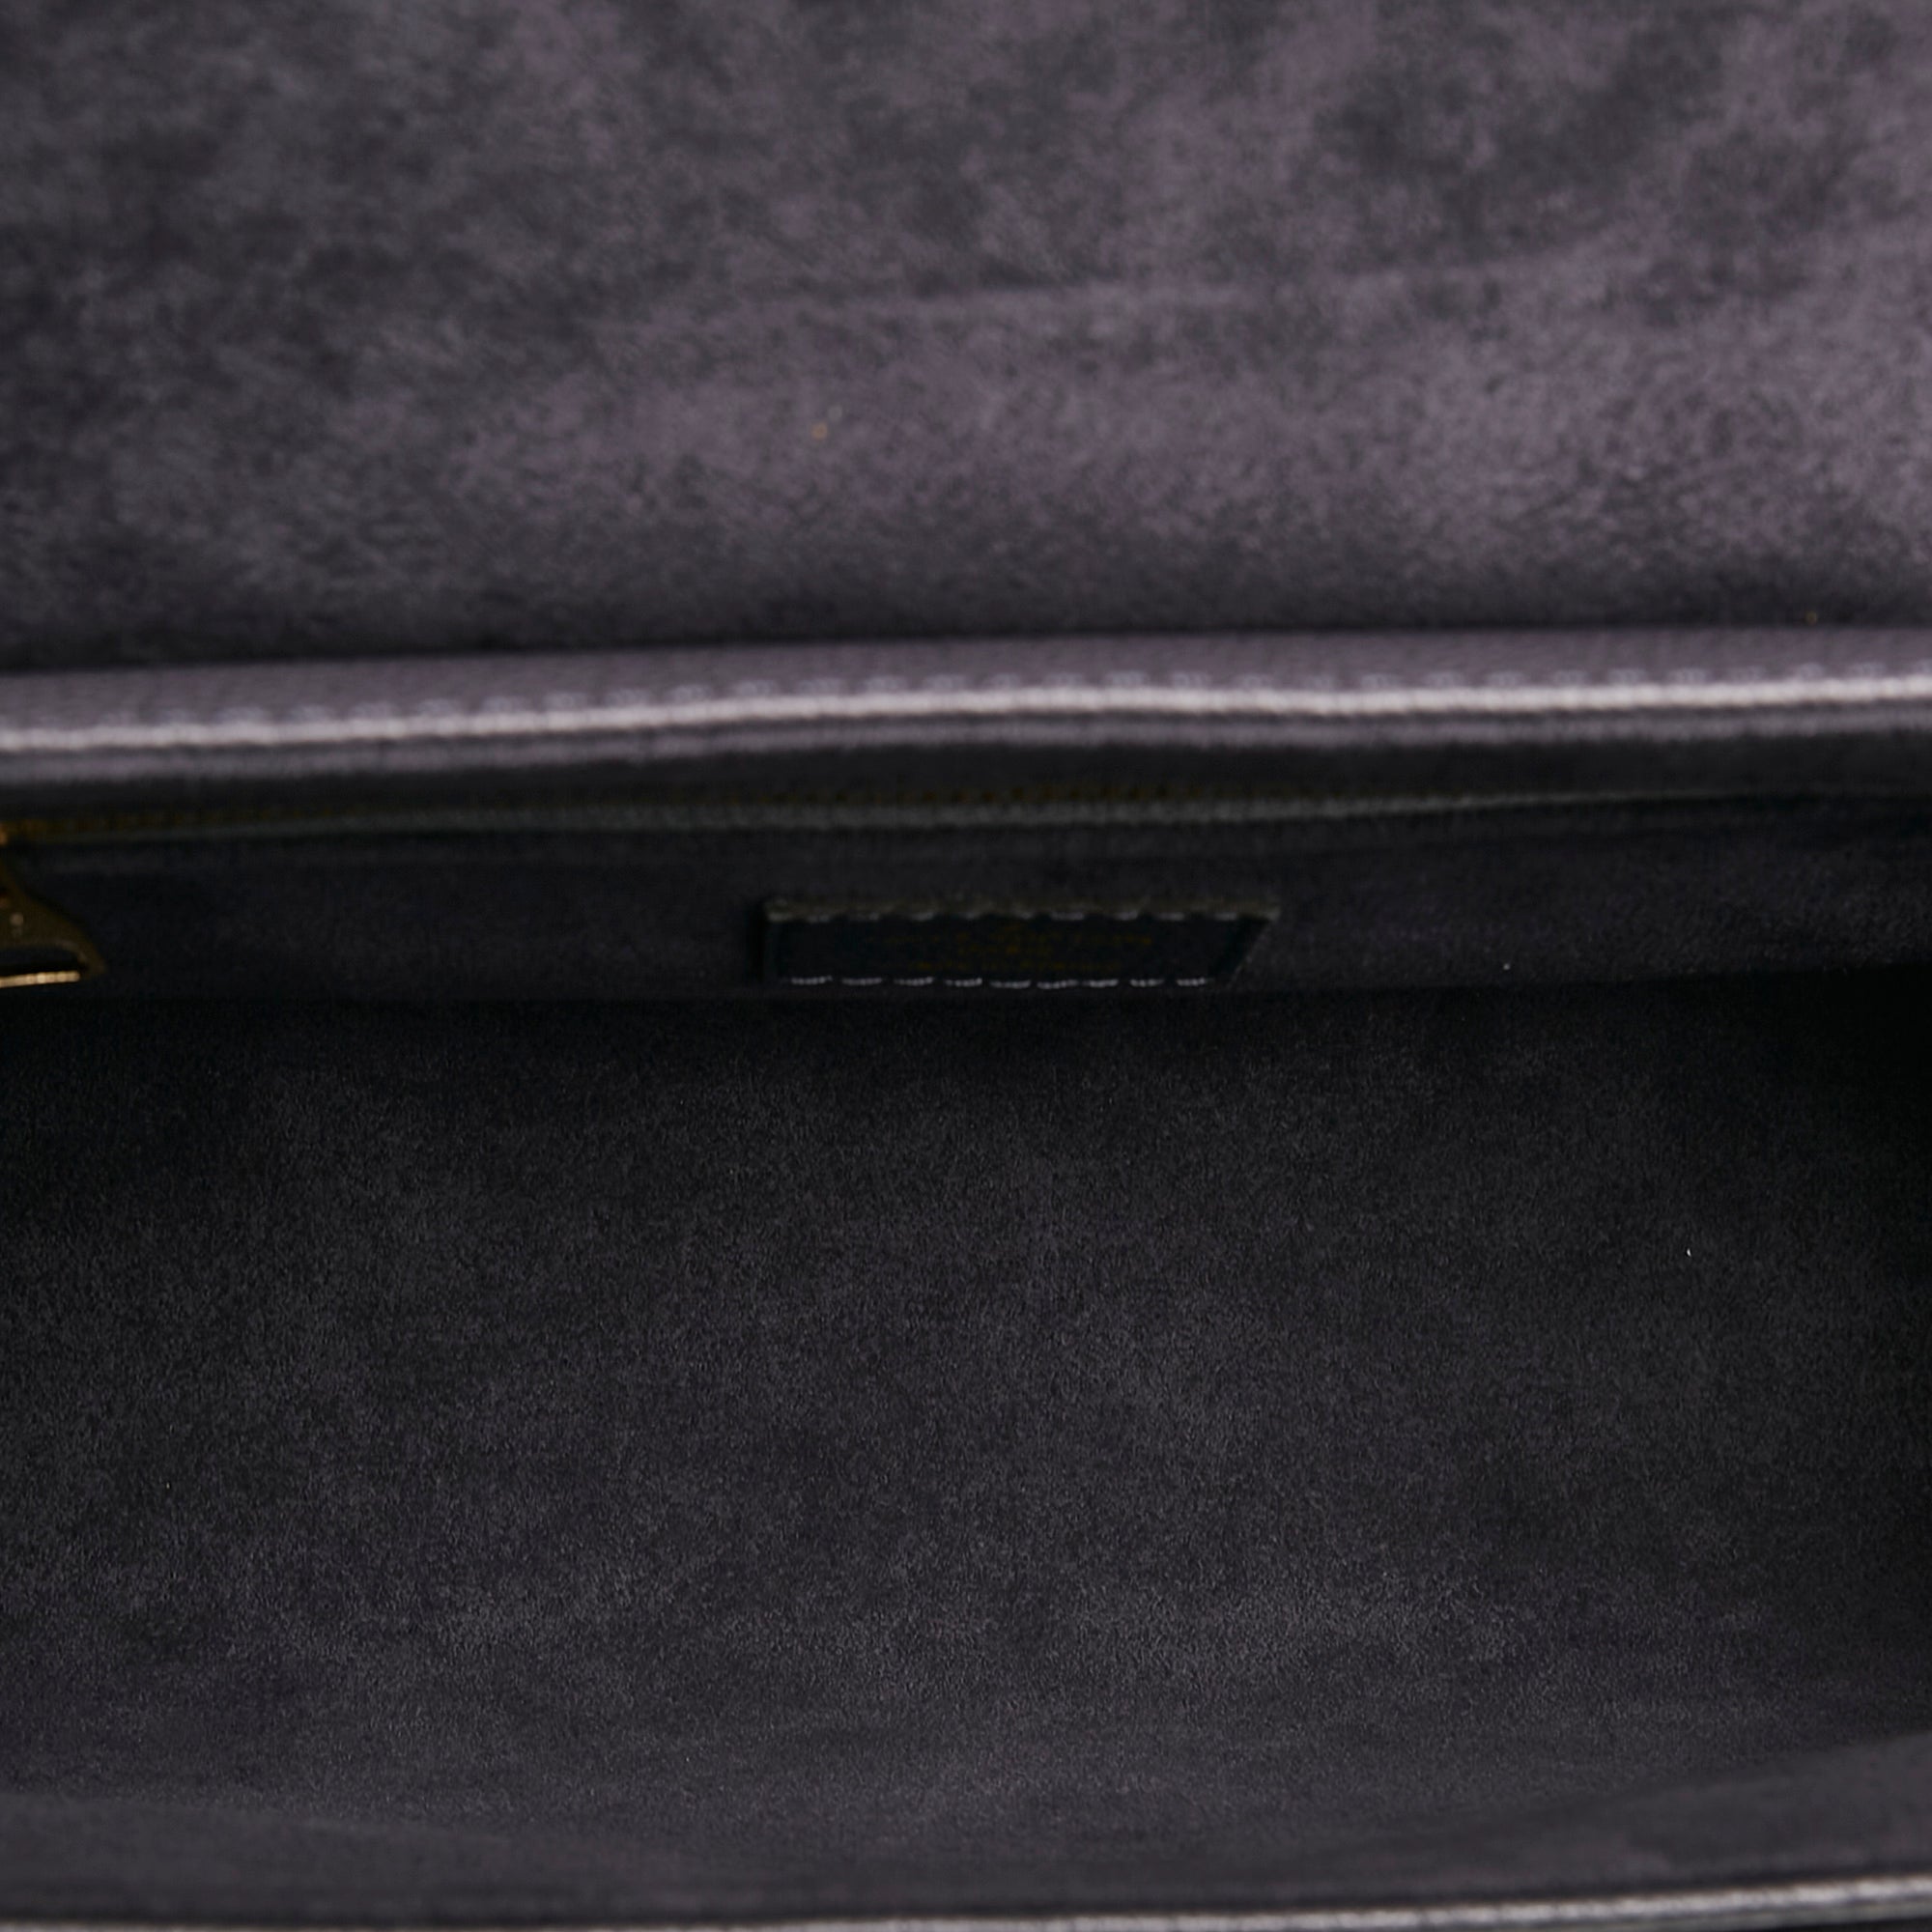 RvceShops Revival, Louis Vuitton pre-owned Saint Germain clutch bag